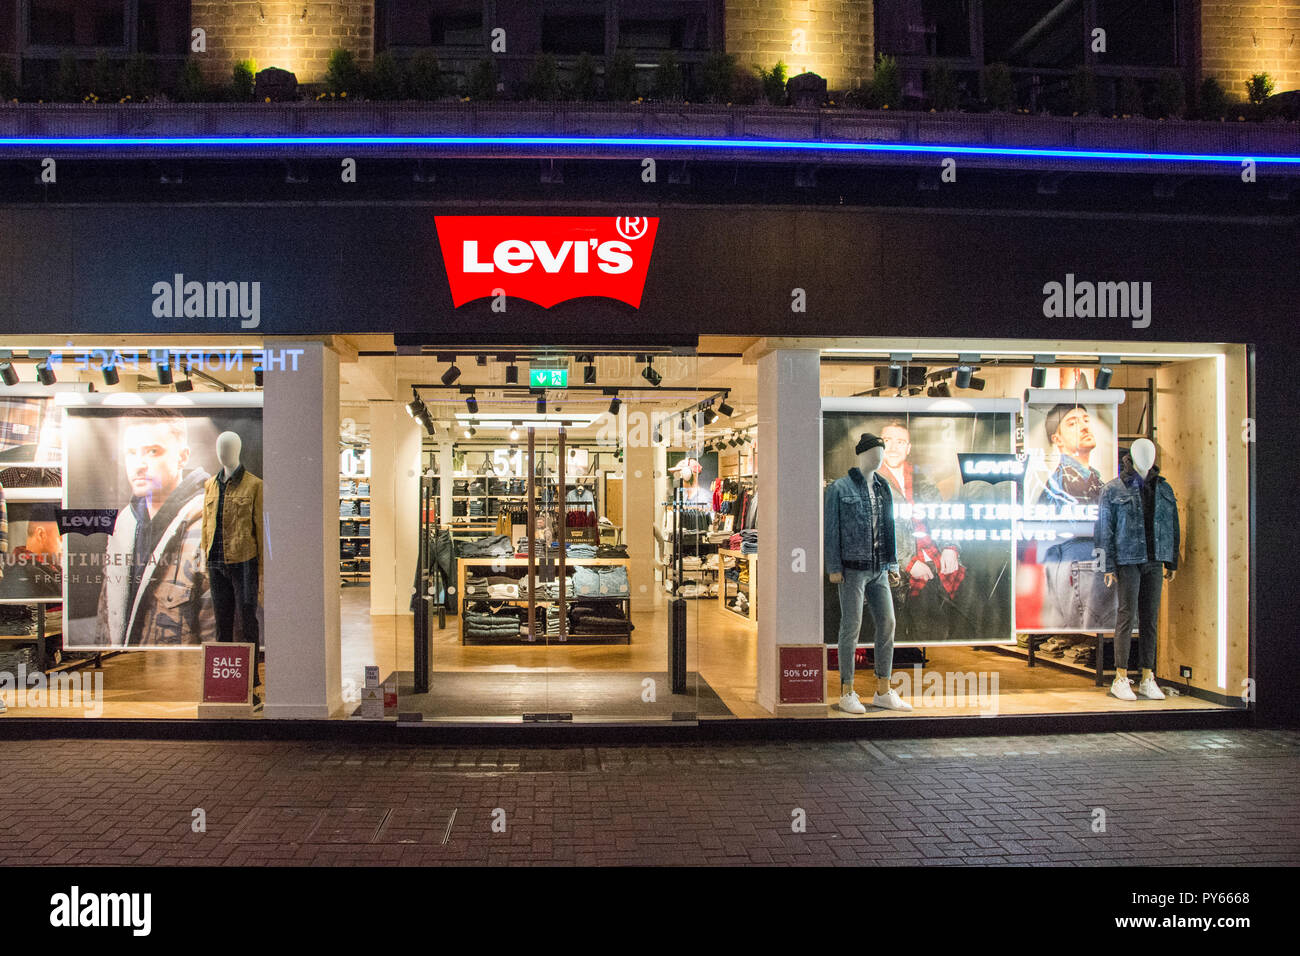 Levis shop -Fotos und -Bildmaterial in hoher Auflösung – Alamy